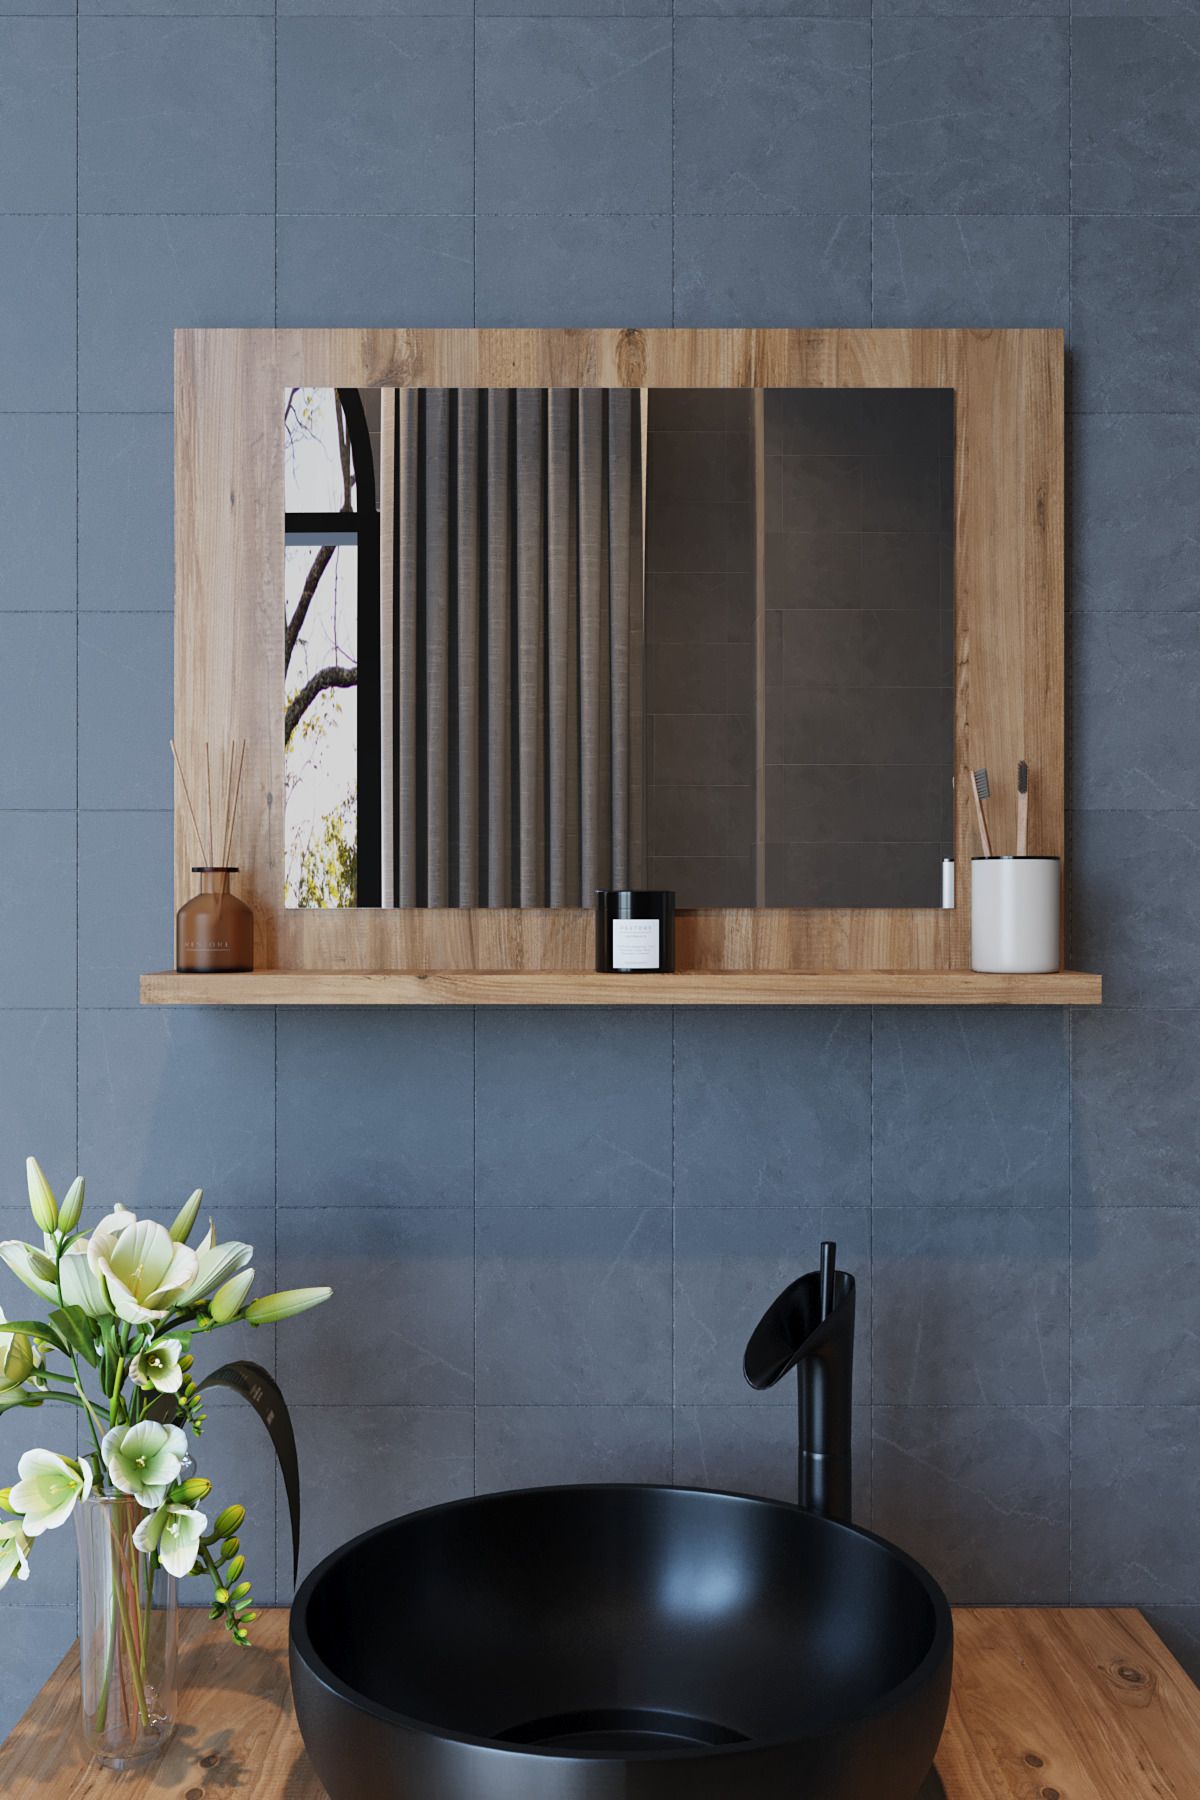 makbulce Yakut Dresuar,60x45 Raflı Banyo Aynası Atlantik Çam